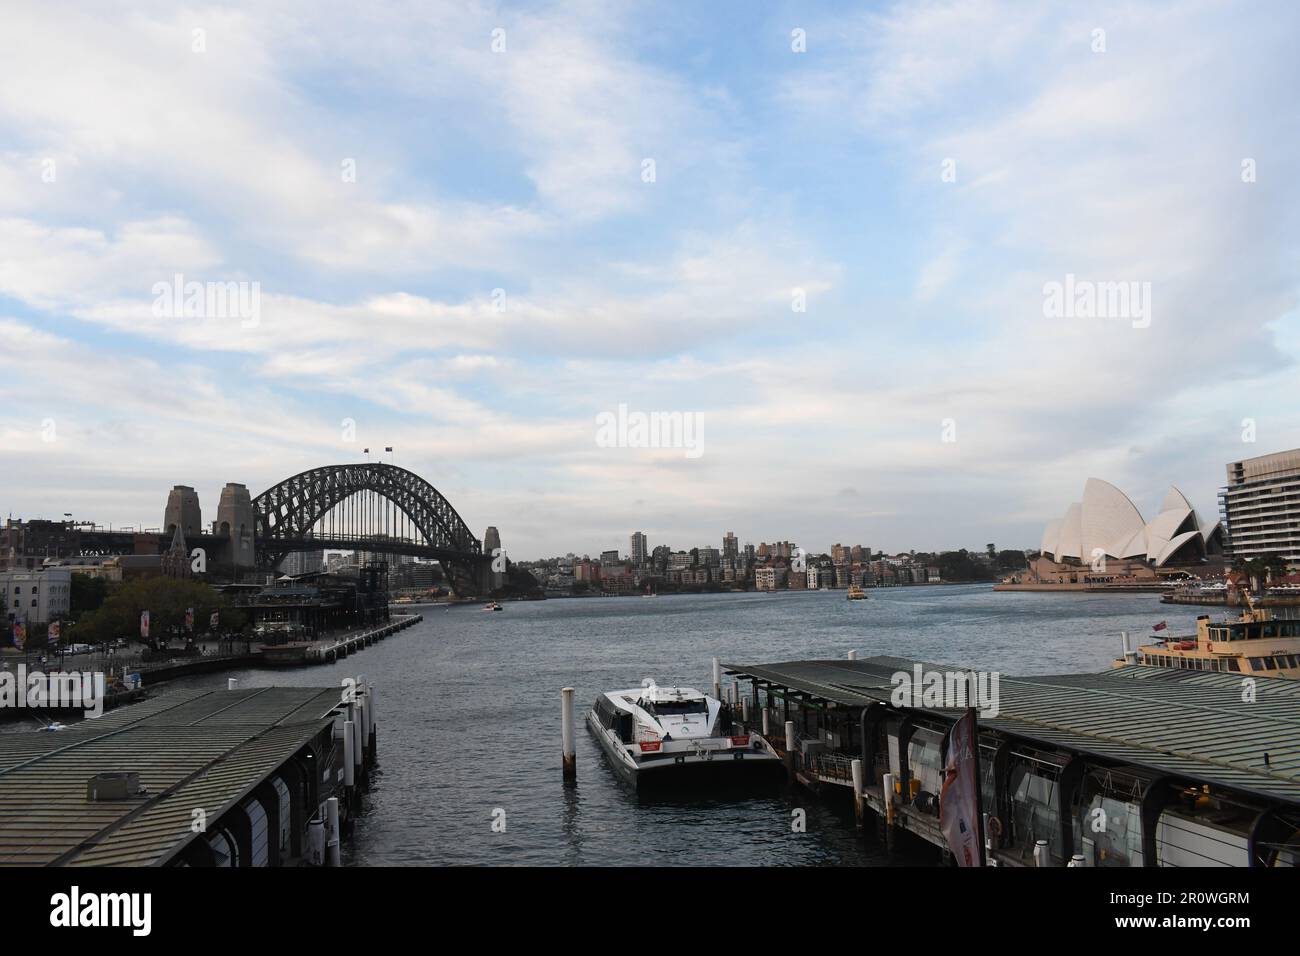 La vue sur Harbour Bridge à Sydney par temps de pluie : une vue depuis la station de métro Circular Quay. Banque D'Images